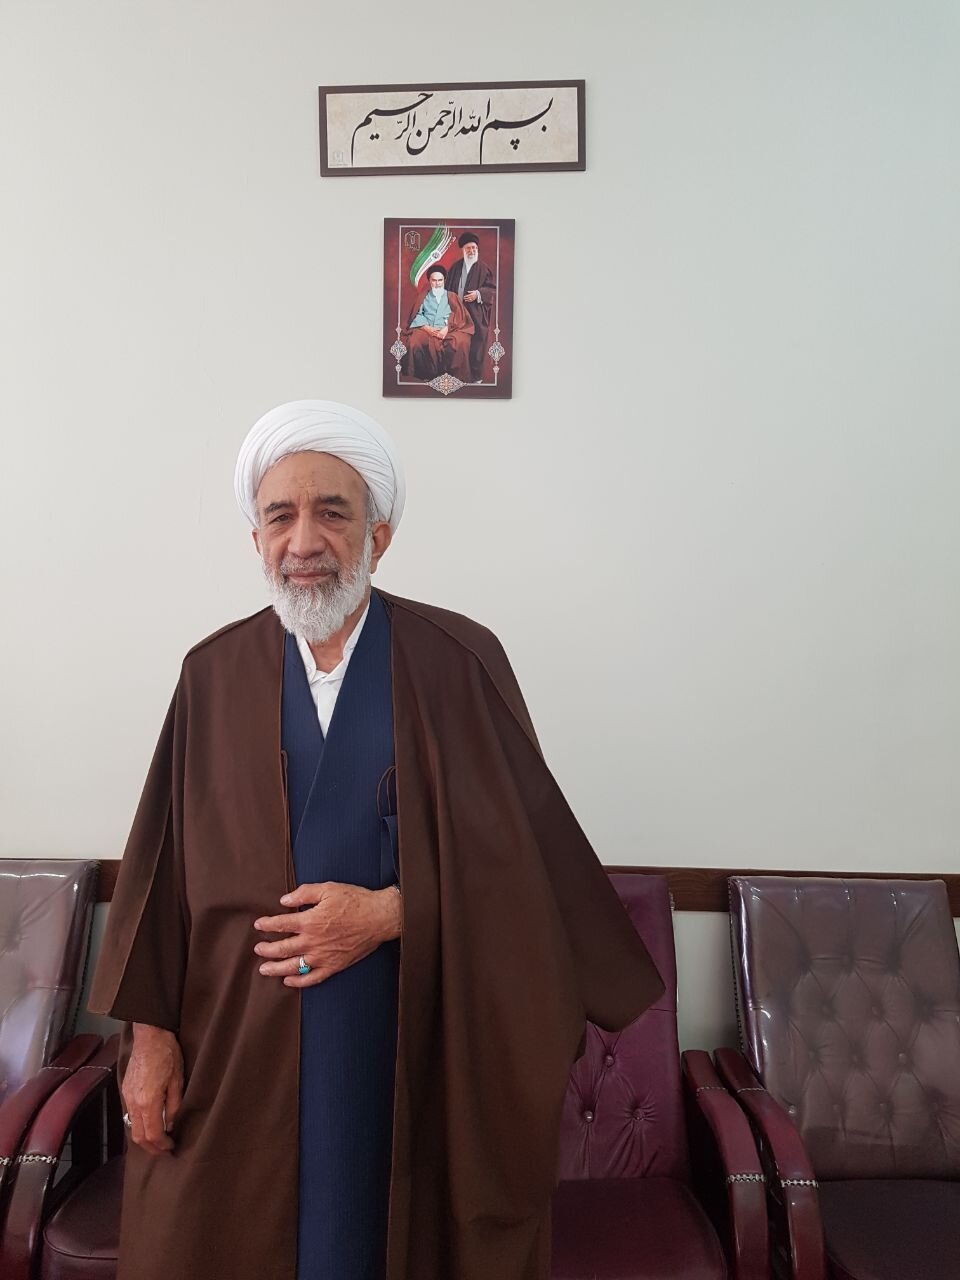 رئیس شورای وحدت استان تهران:
برنامه شورای وحدت برای شناسایی کاندیداها